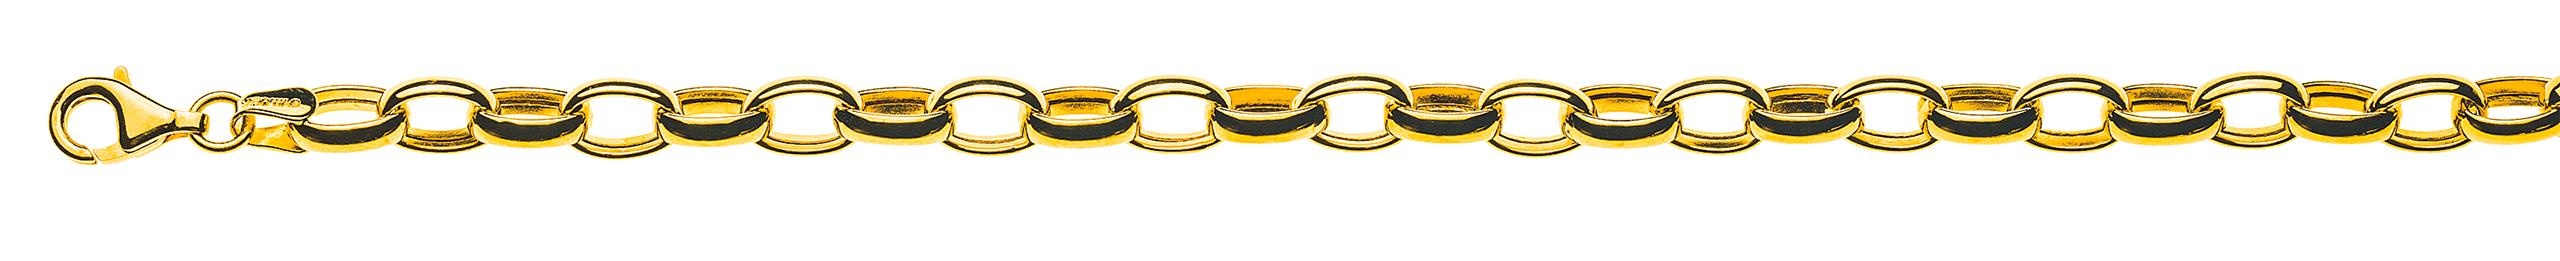 AURONOS Prestige Bracelet ancre or jaune 18 carats 19cm